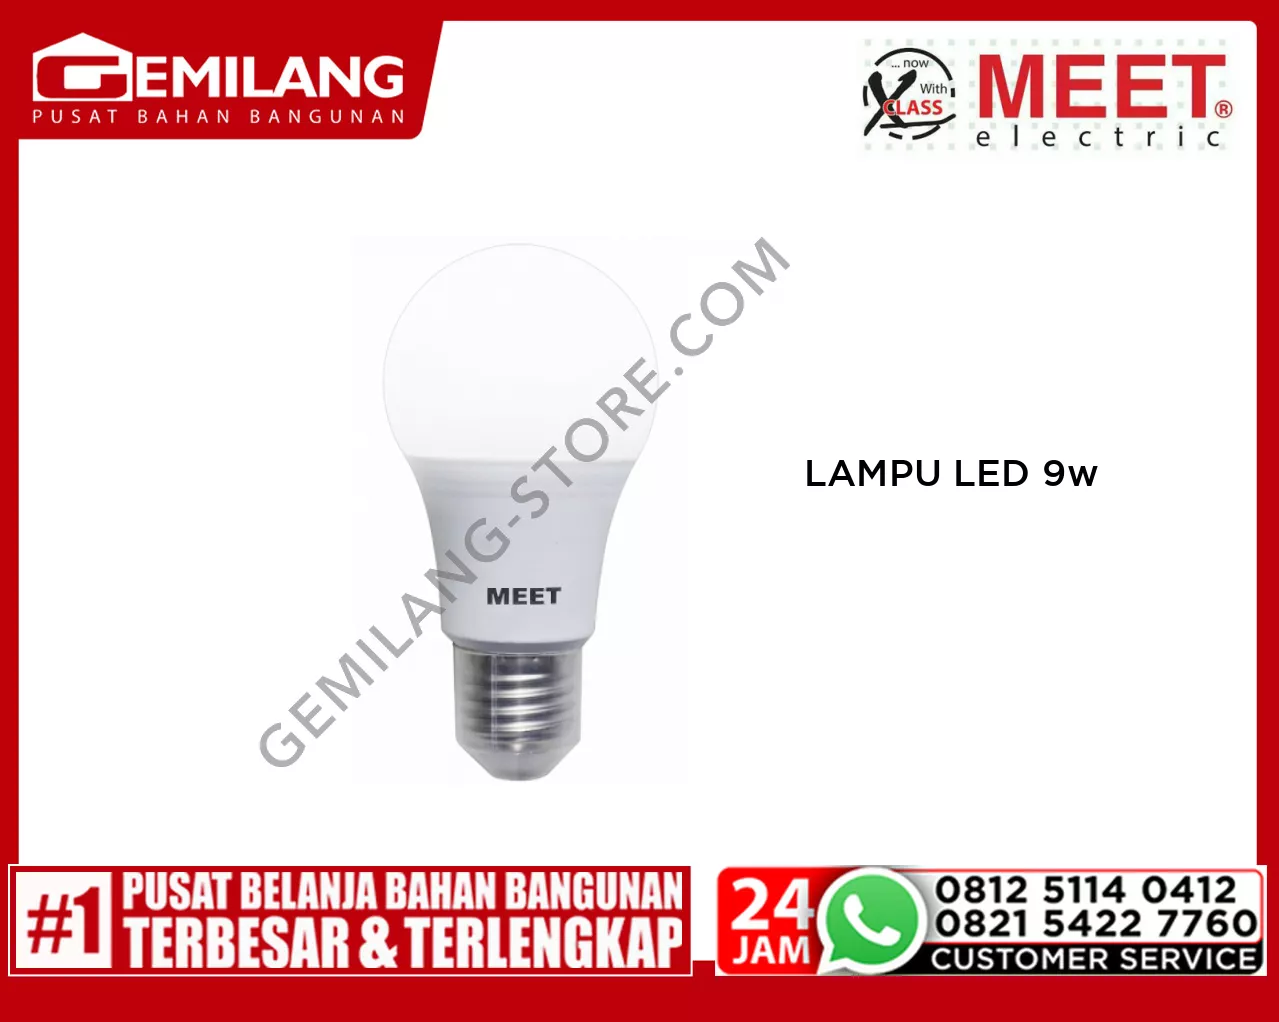 MEET LAMPU LED CLASSIC 9w